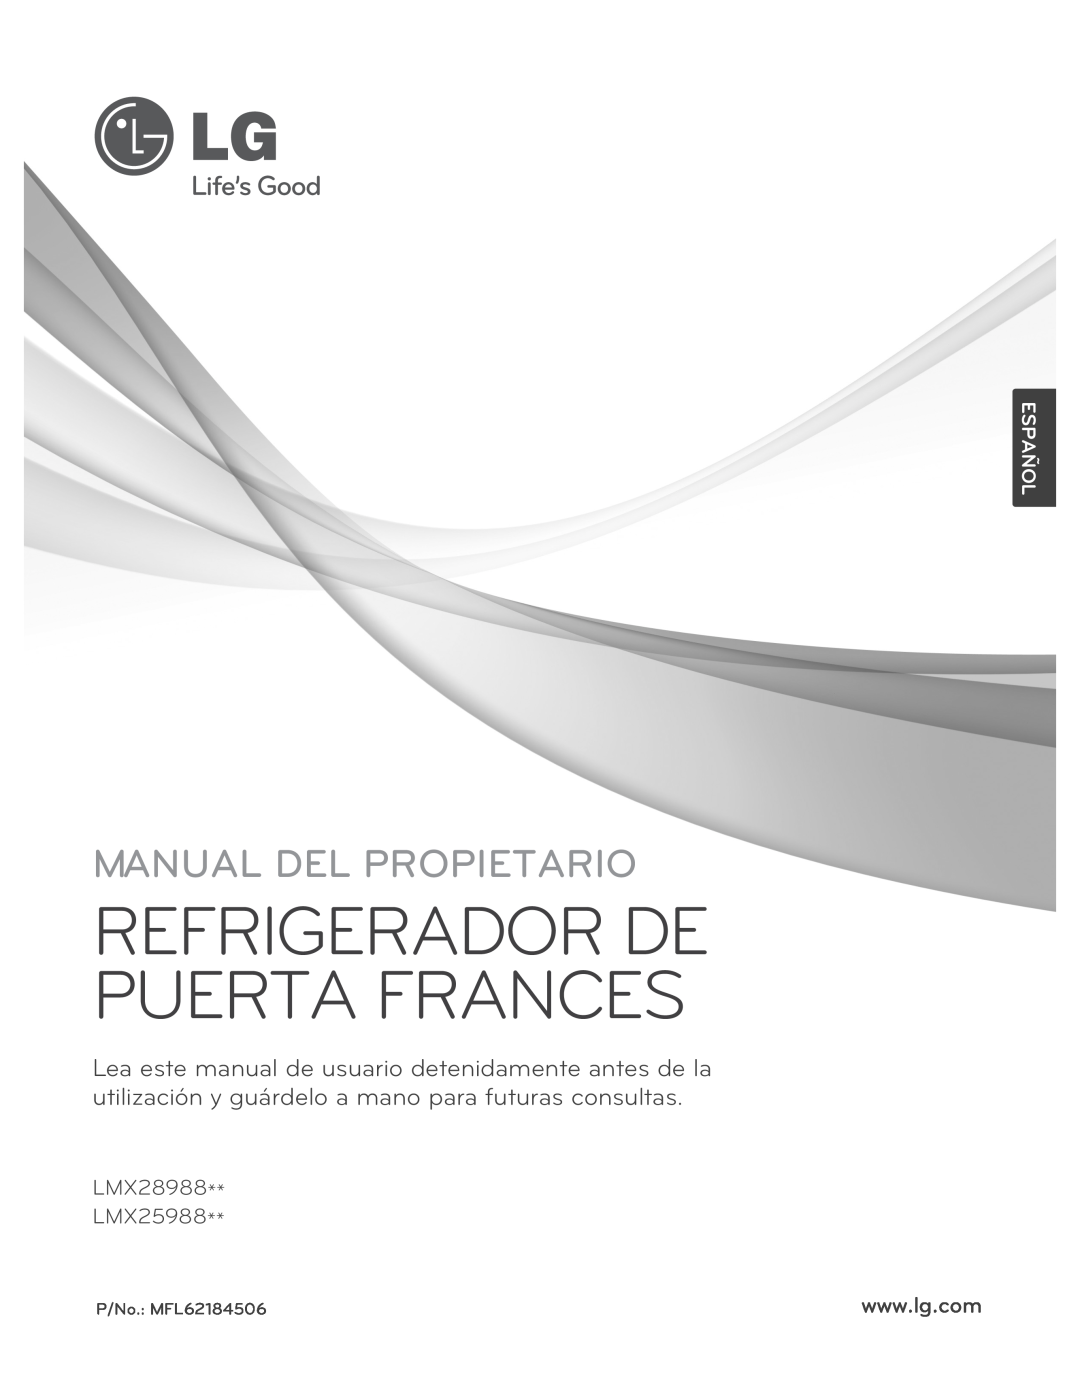 LG Electronics LMX25988ST owner manual Refrigerador De Puerta Frances, Manual Del Propietario, Español, LMX28988 LMX25988 